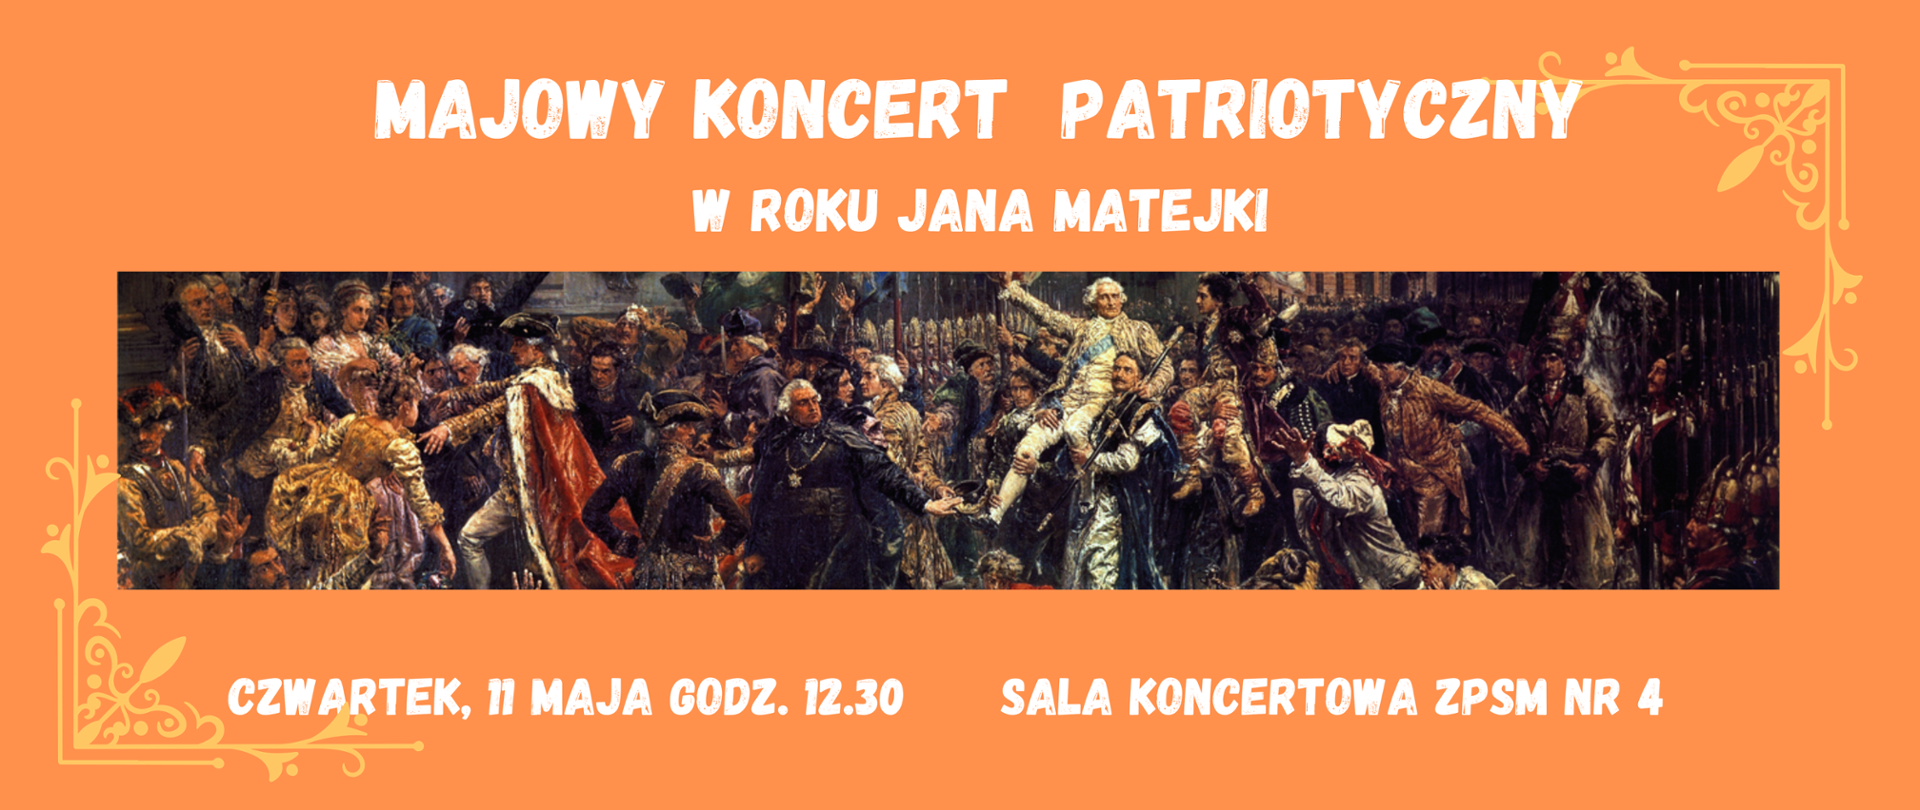 Baner na Majowy Koncert Patriotyczny w Roku Jana Matejki, 11 maja 2023 godz. 12.30. Ilustracją jest obraz Jana Matejki "Konstytucja 3 maja" 